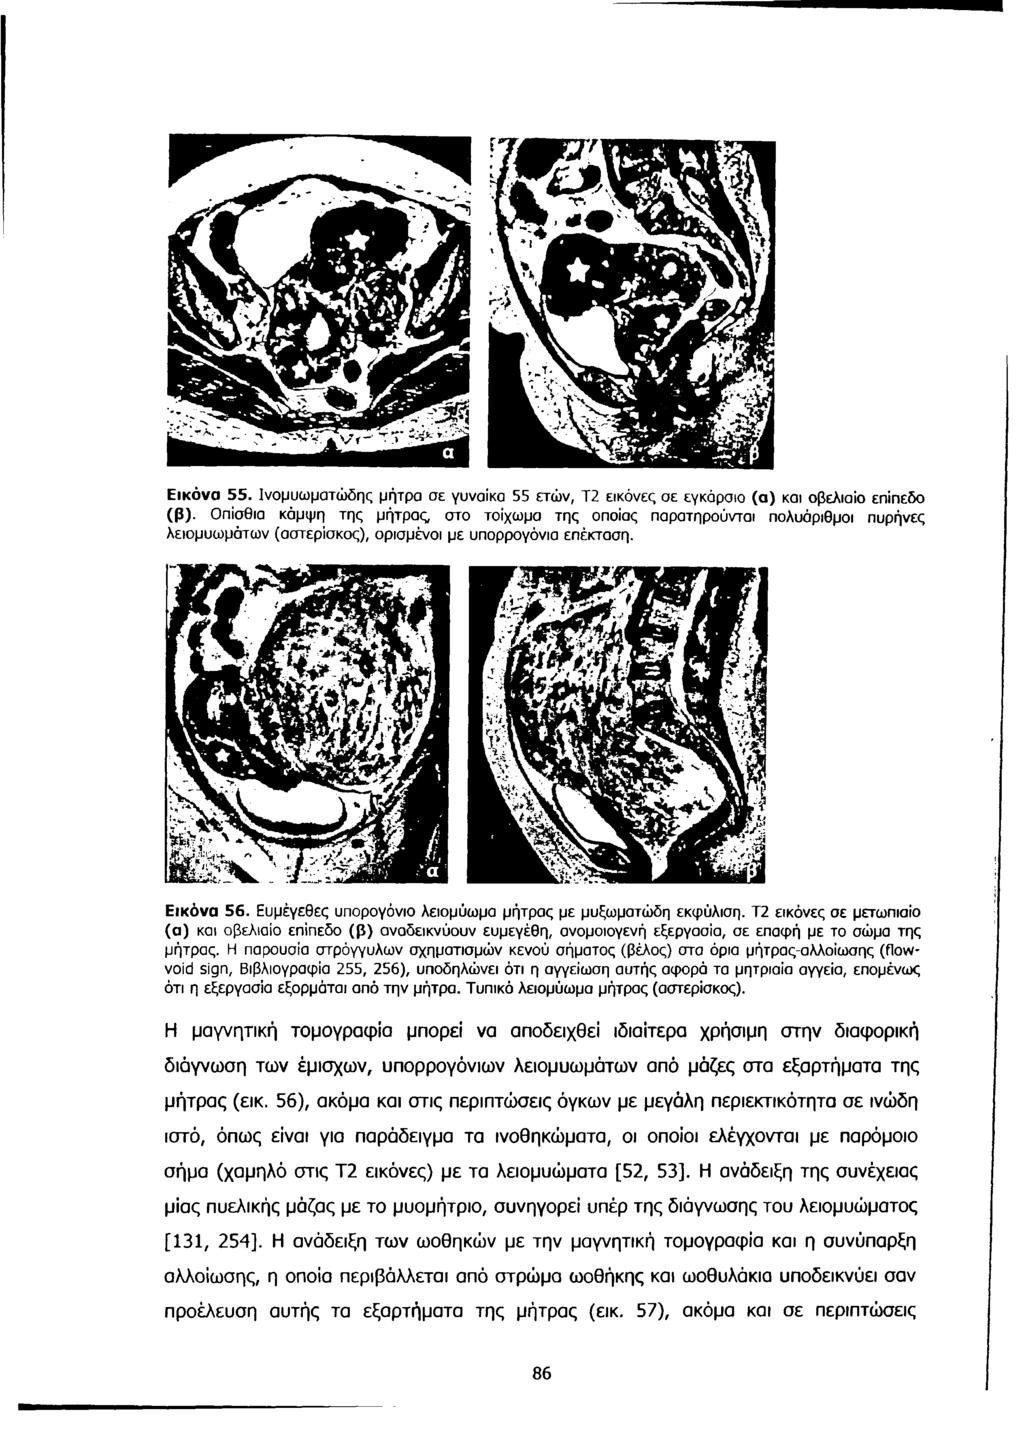 Εικόνα 55. Ινομυωματώδης μήτρα σε γυναίκα 55 ετών, Τ2 εικόνες σε εγκάρσιο (α) και οβελιαίο επίπεδο (β).